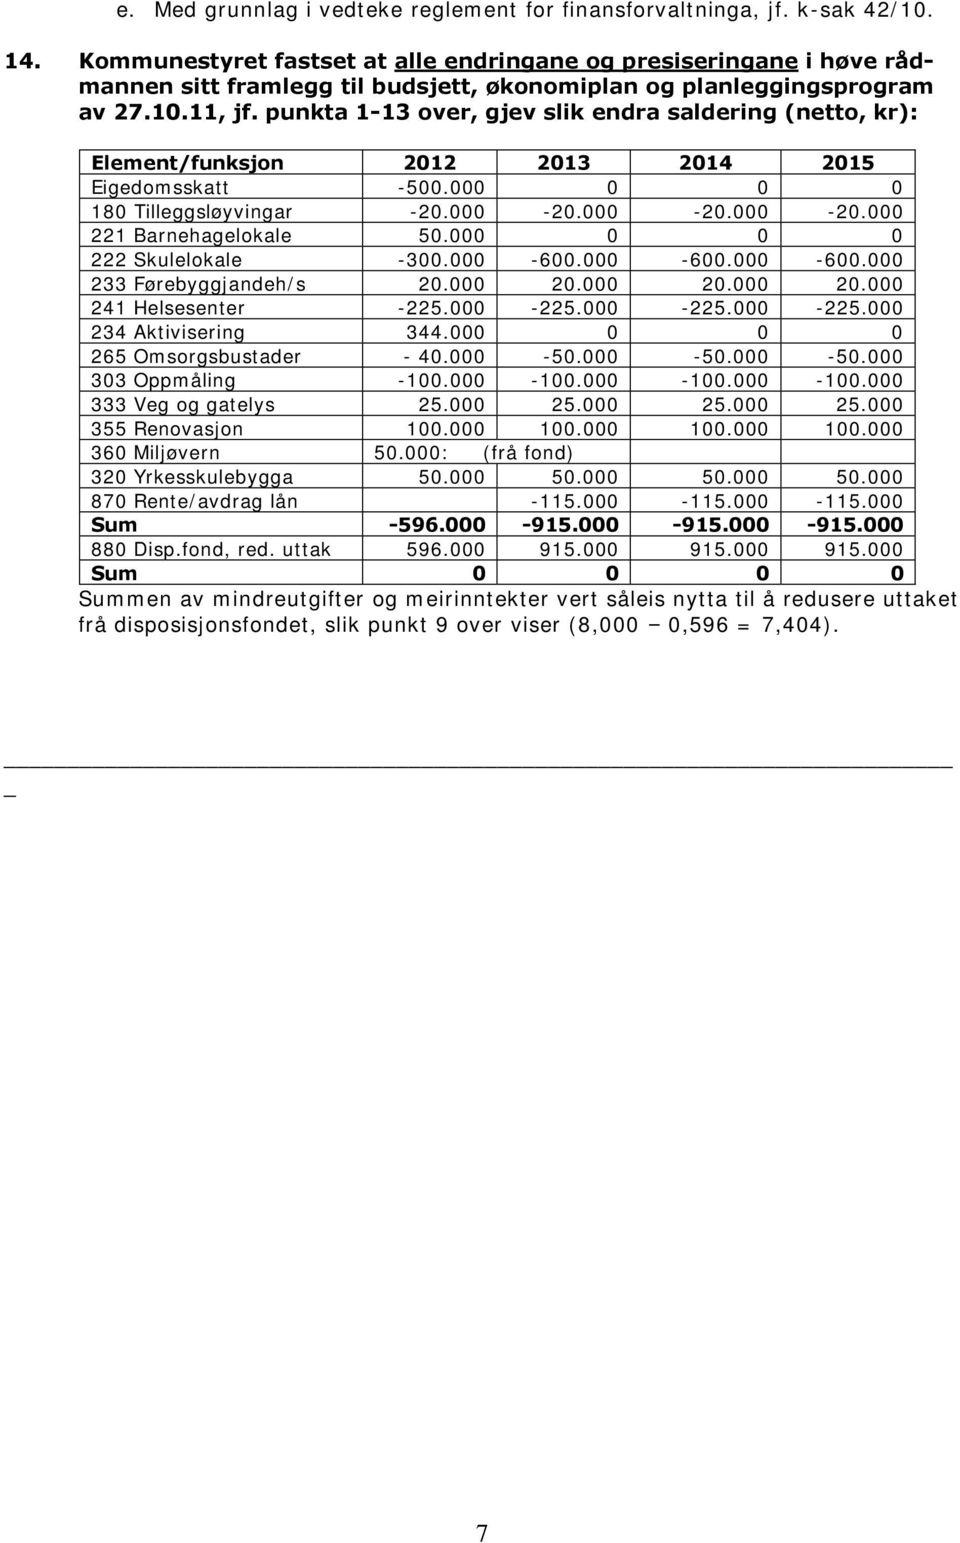 punkta 1-13 over, gjev slik endra saldering (netto, kr): Element/funksjon 2012 2013 2014 2015 Eigedomsskatt -500.000 0 0 0 180 Tilleggsløyvingar -20.000-20.000-20.000-20.000 221 Barnehagelokale 50.